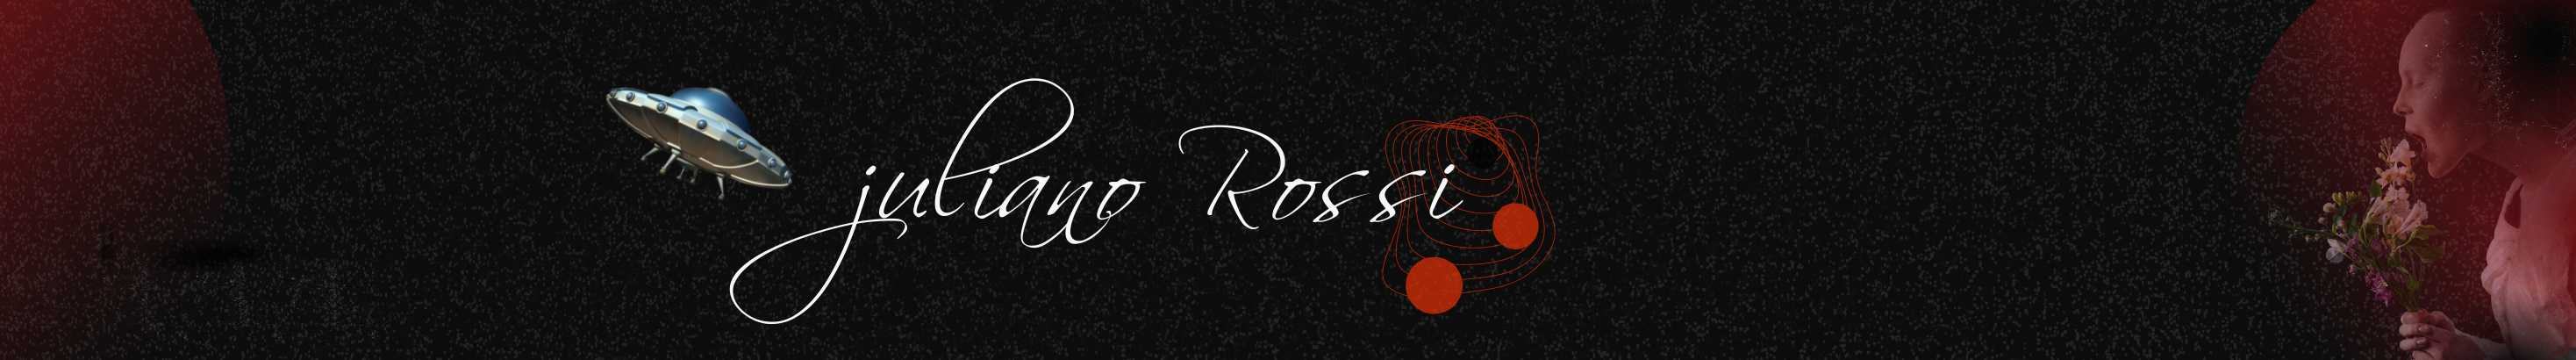 JU ROSSI's profile banner